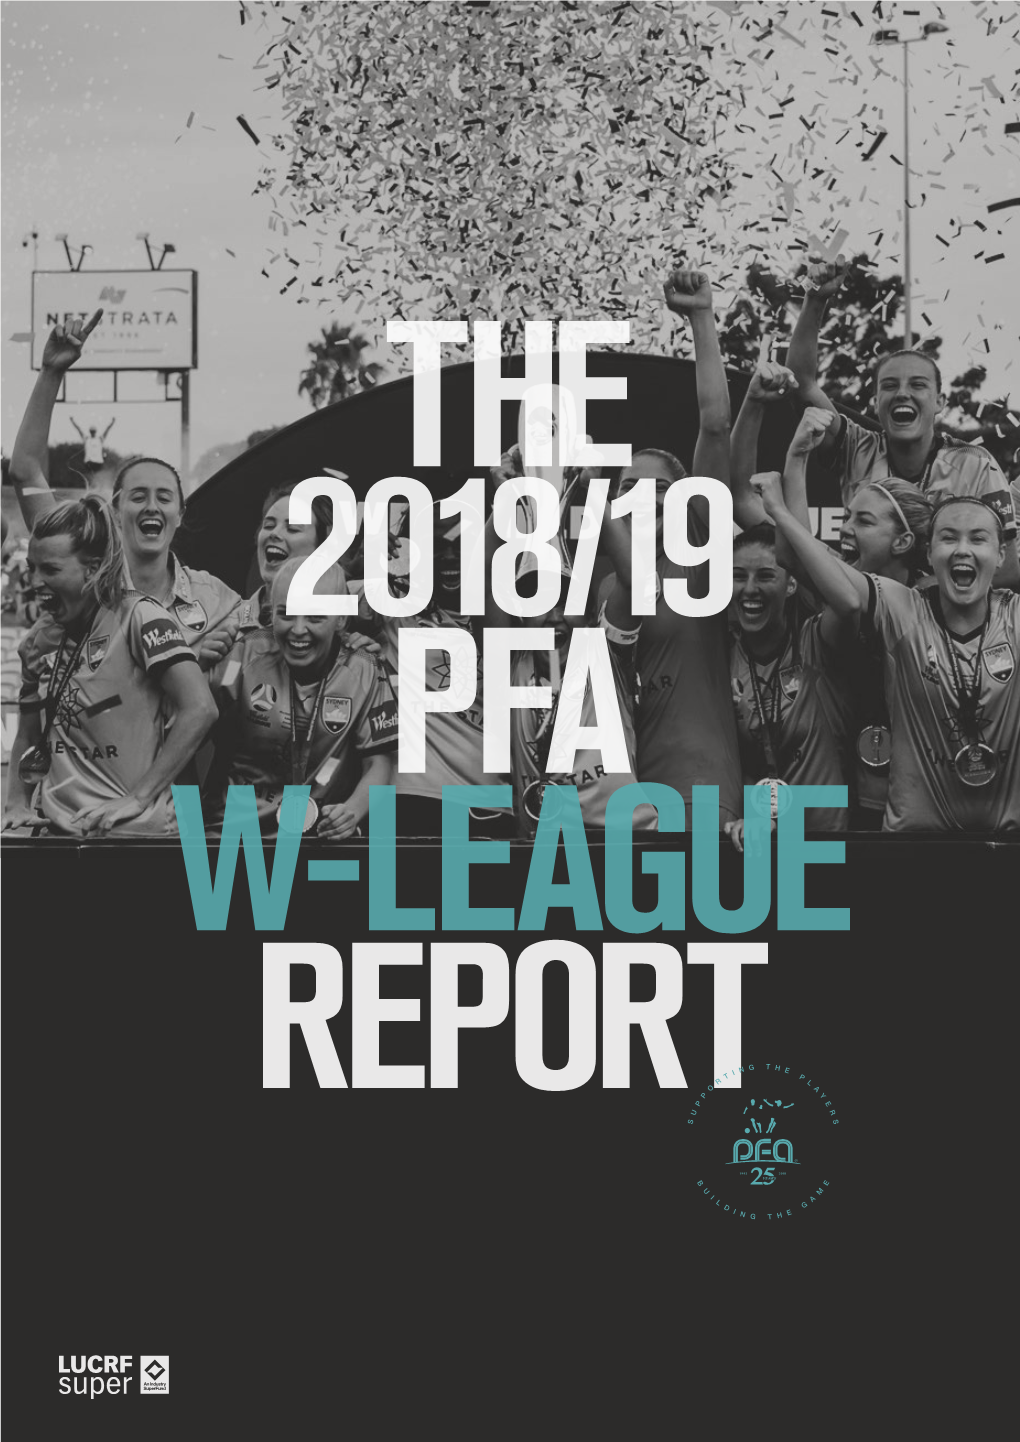 The PFA's 2018-19 W-League Report